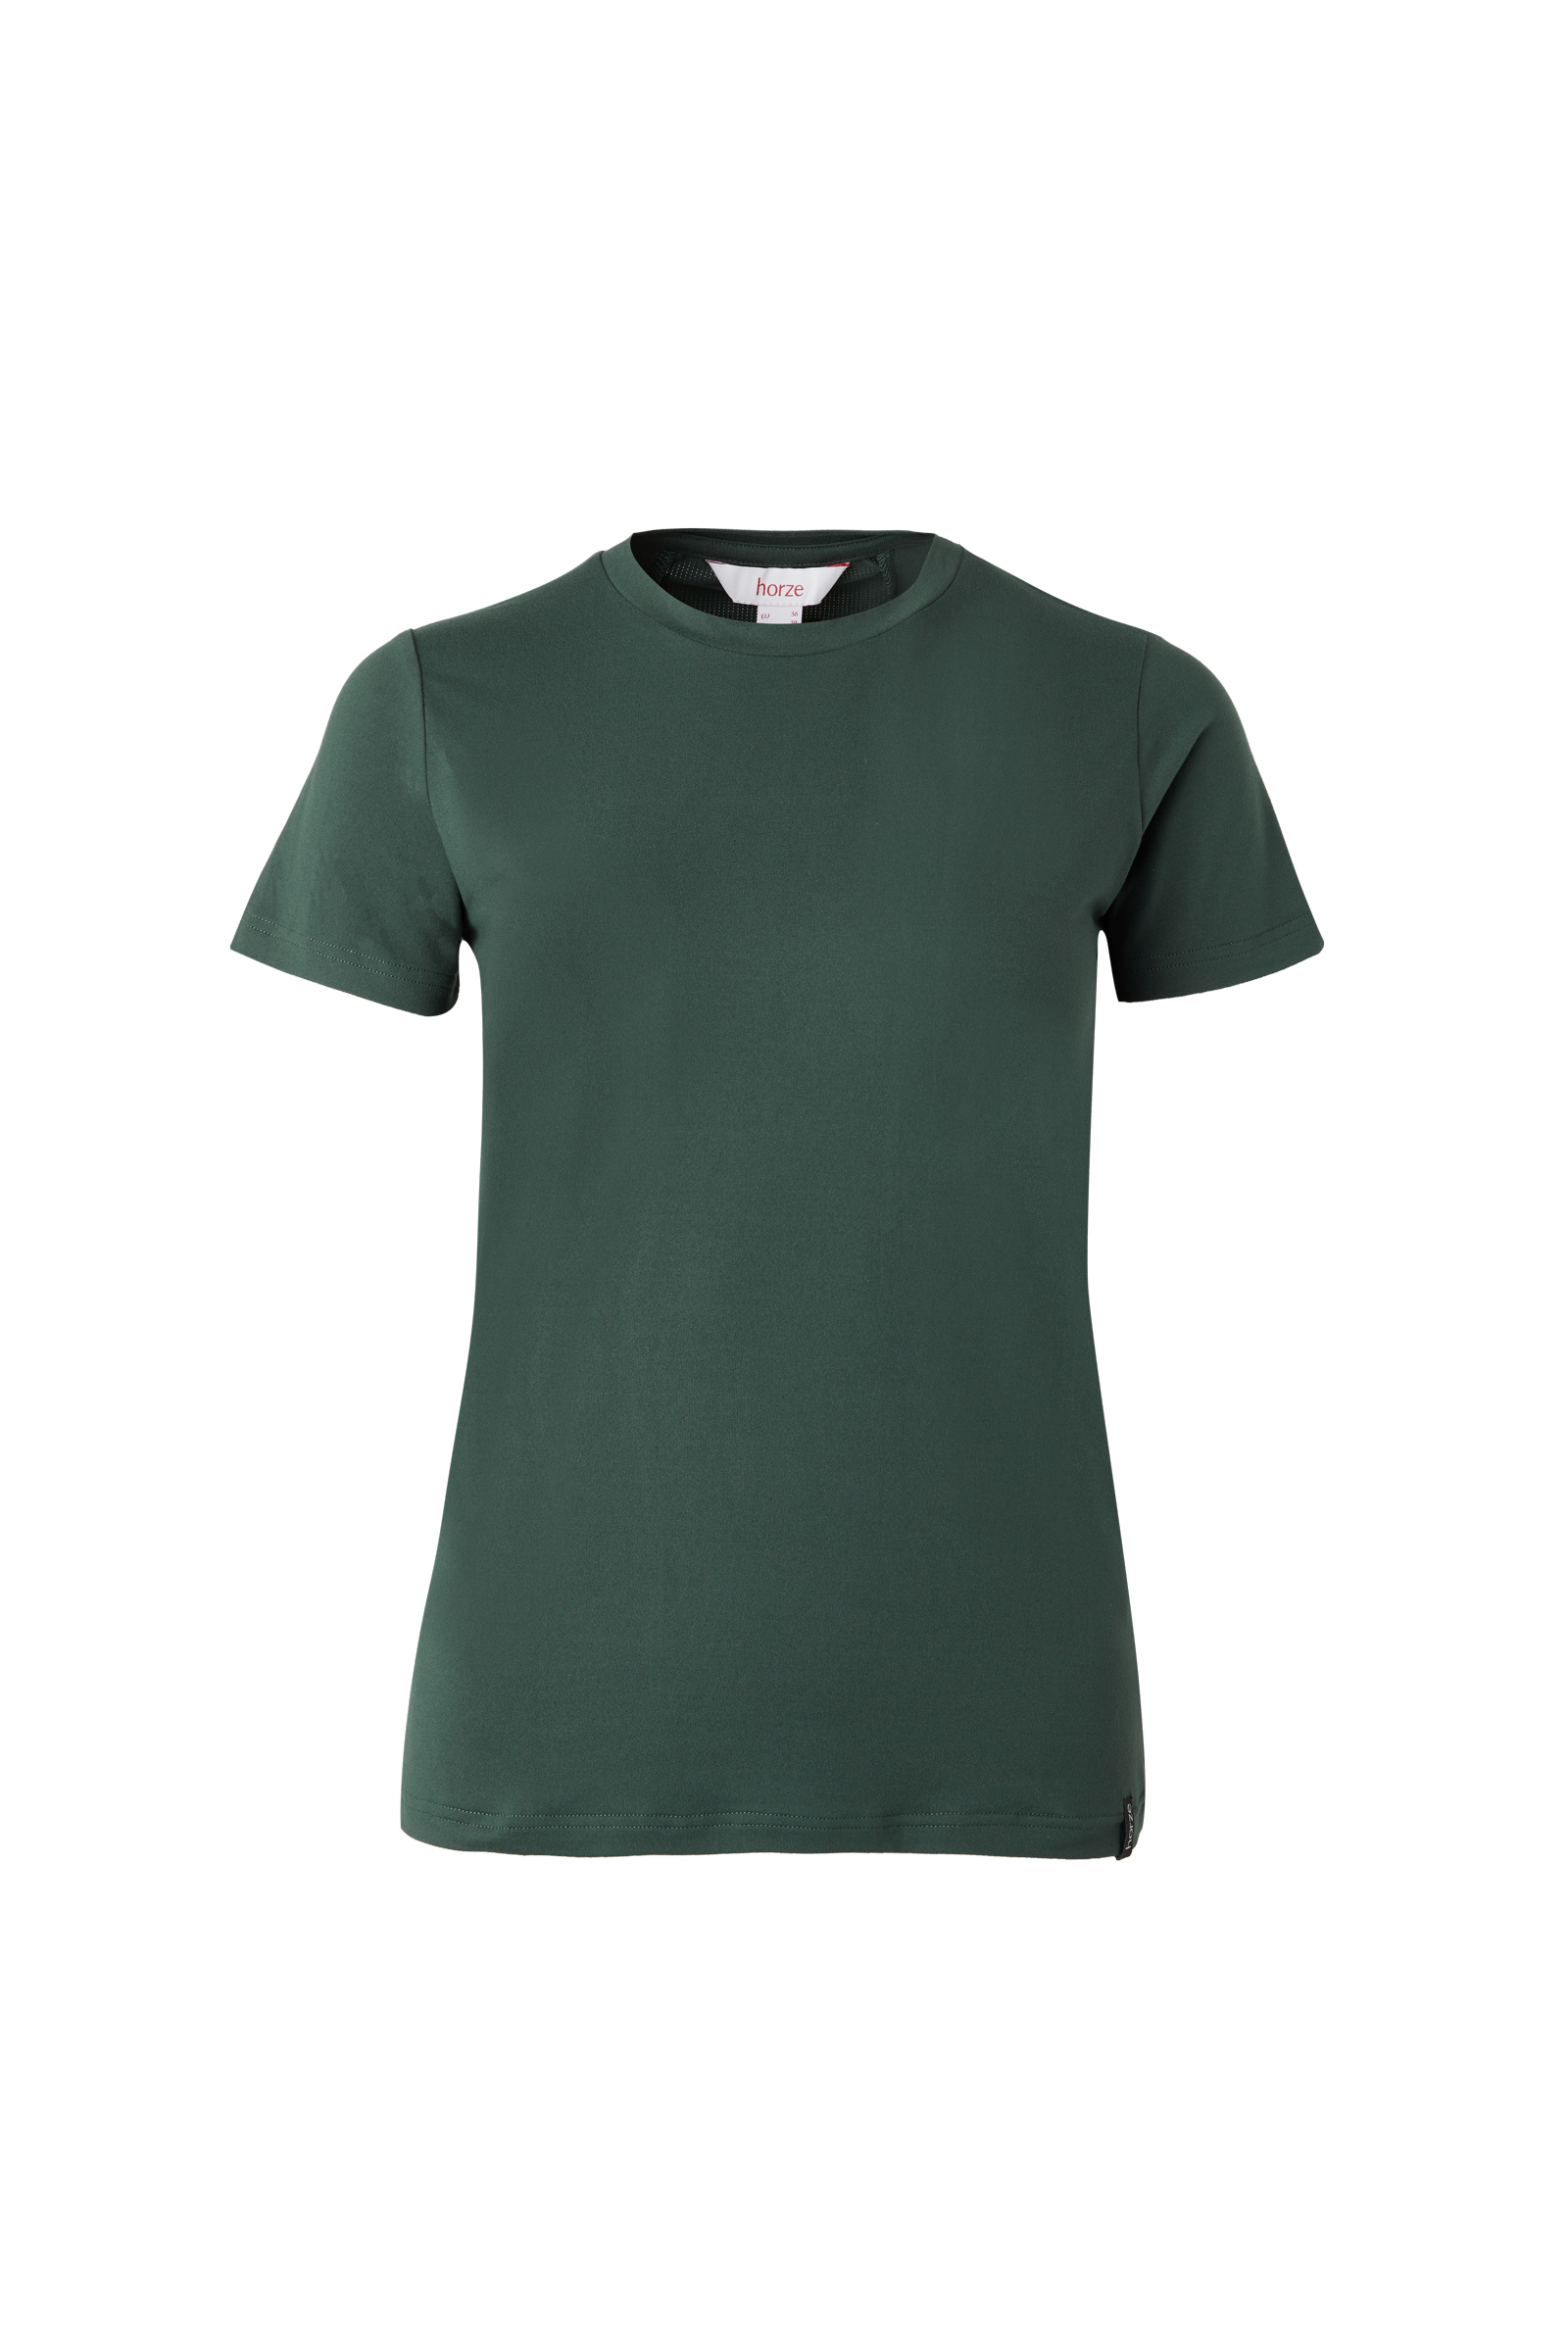 Buy Horze Lily Women's Functional T-Shirt